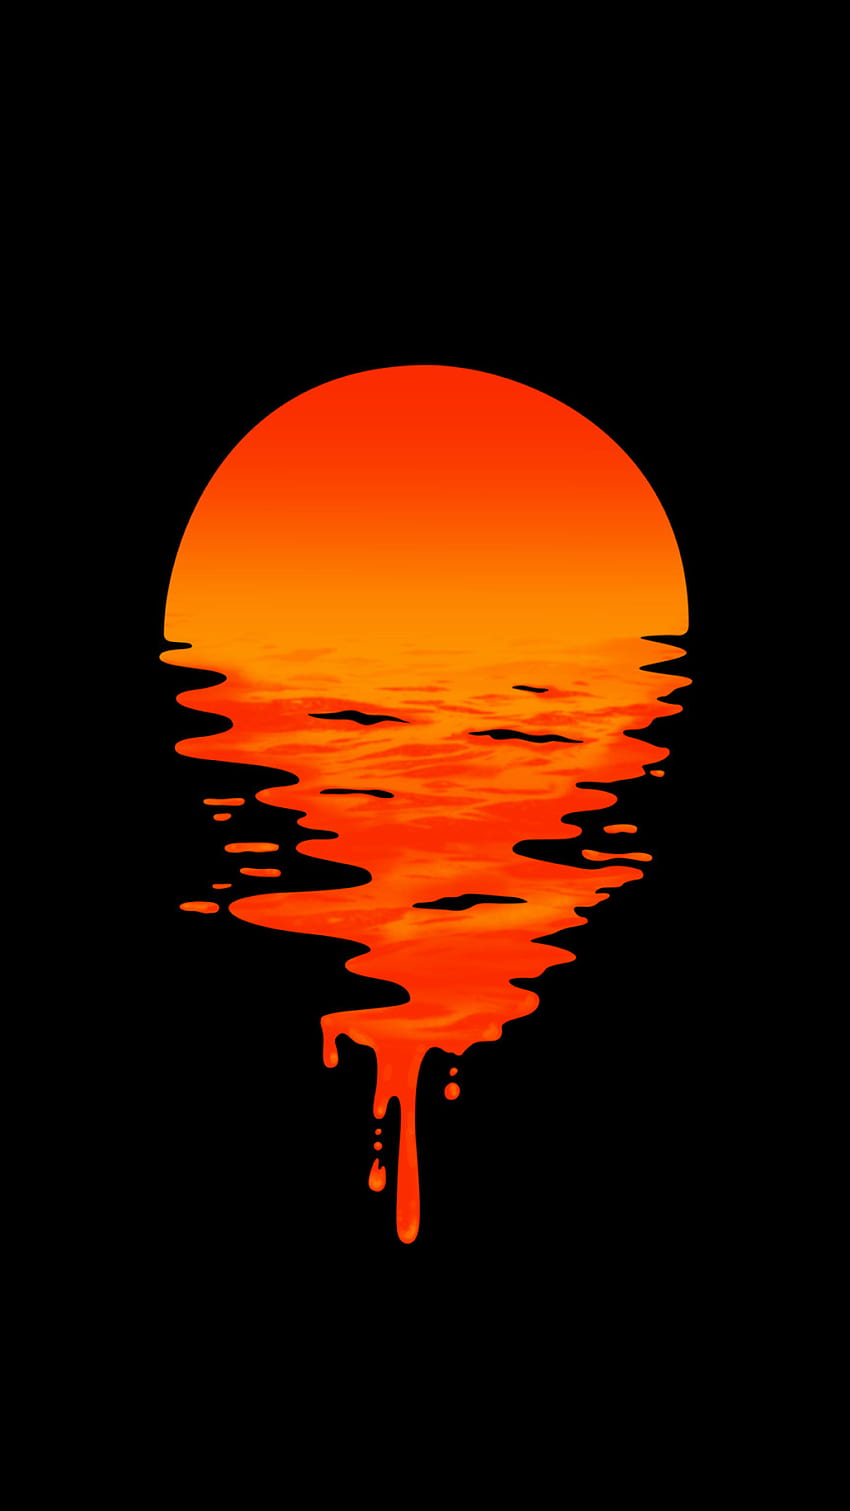 Aesthetic Orange Sunset Wallpapers - Sunset Aesthetic Wallpaper